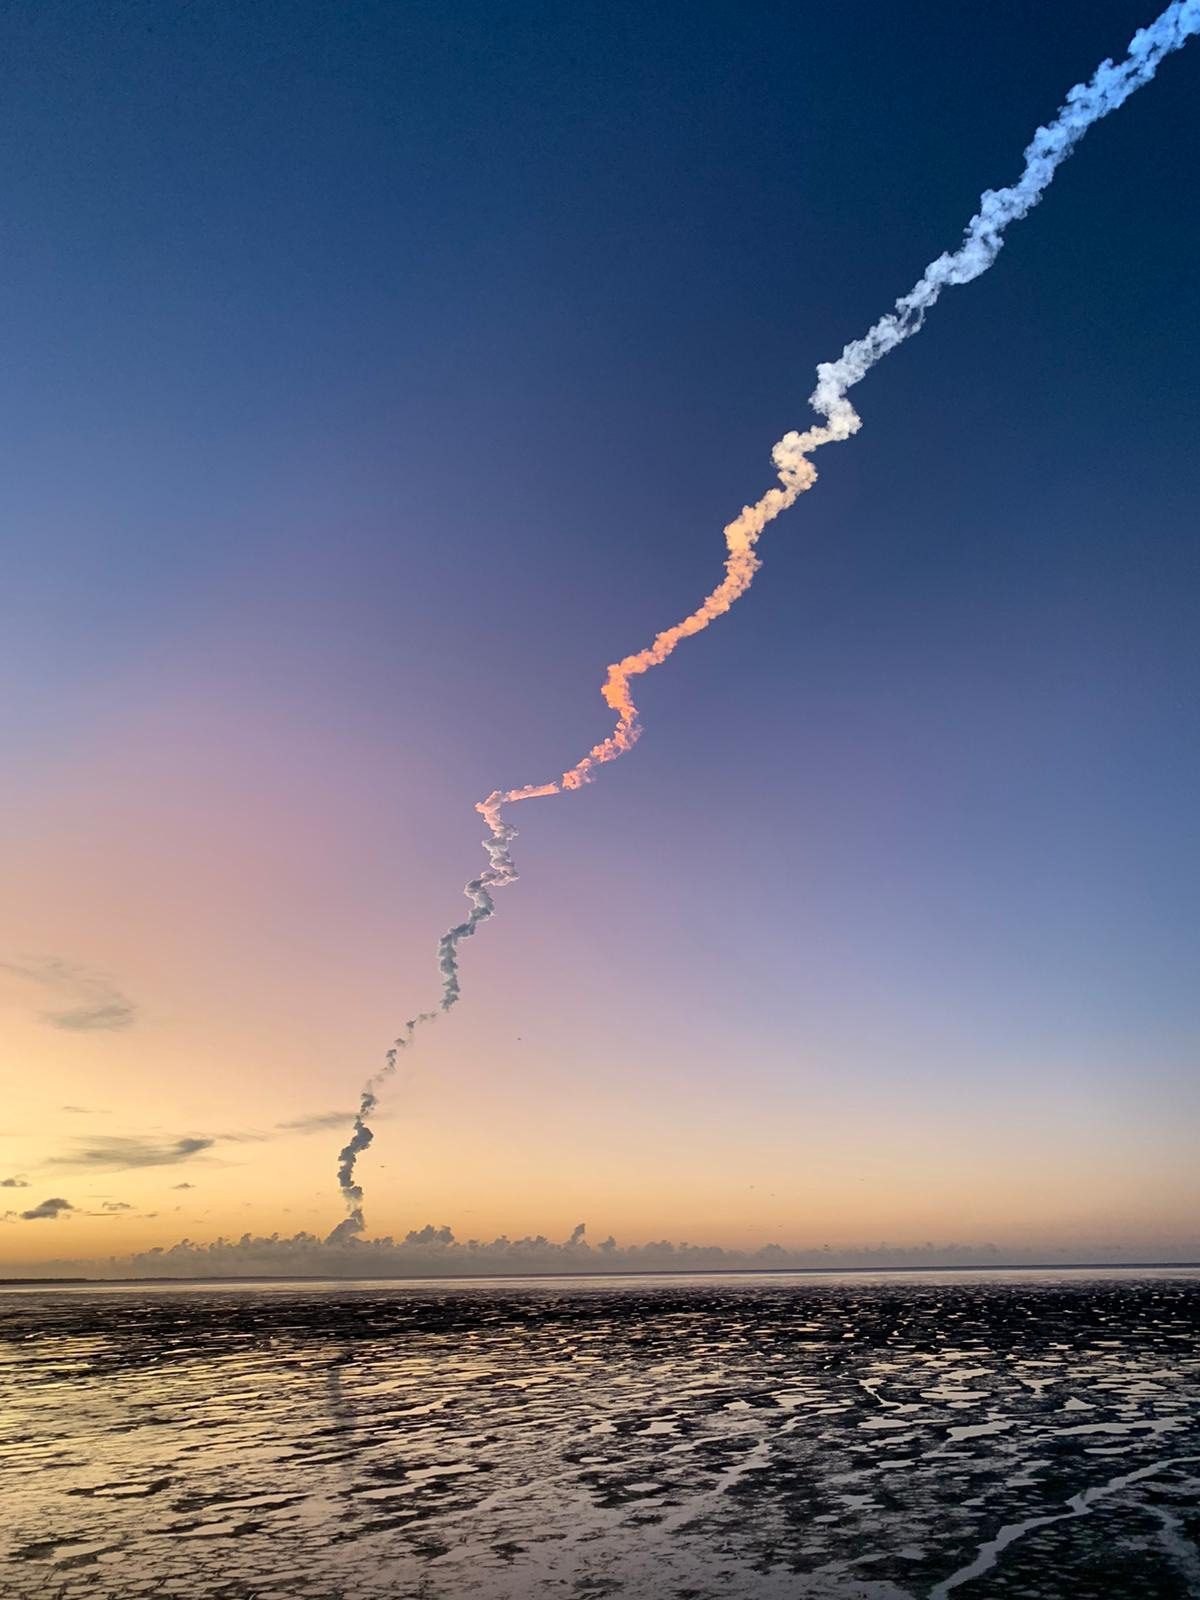 décollage de la fusée Ariane5 le 7 septembre 2022 dans le ciel limpide du mois de septembre